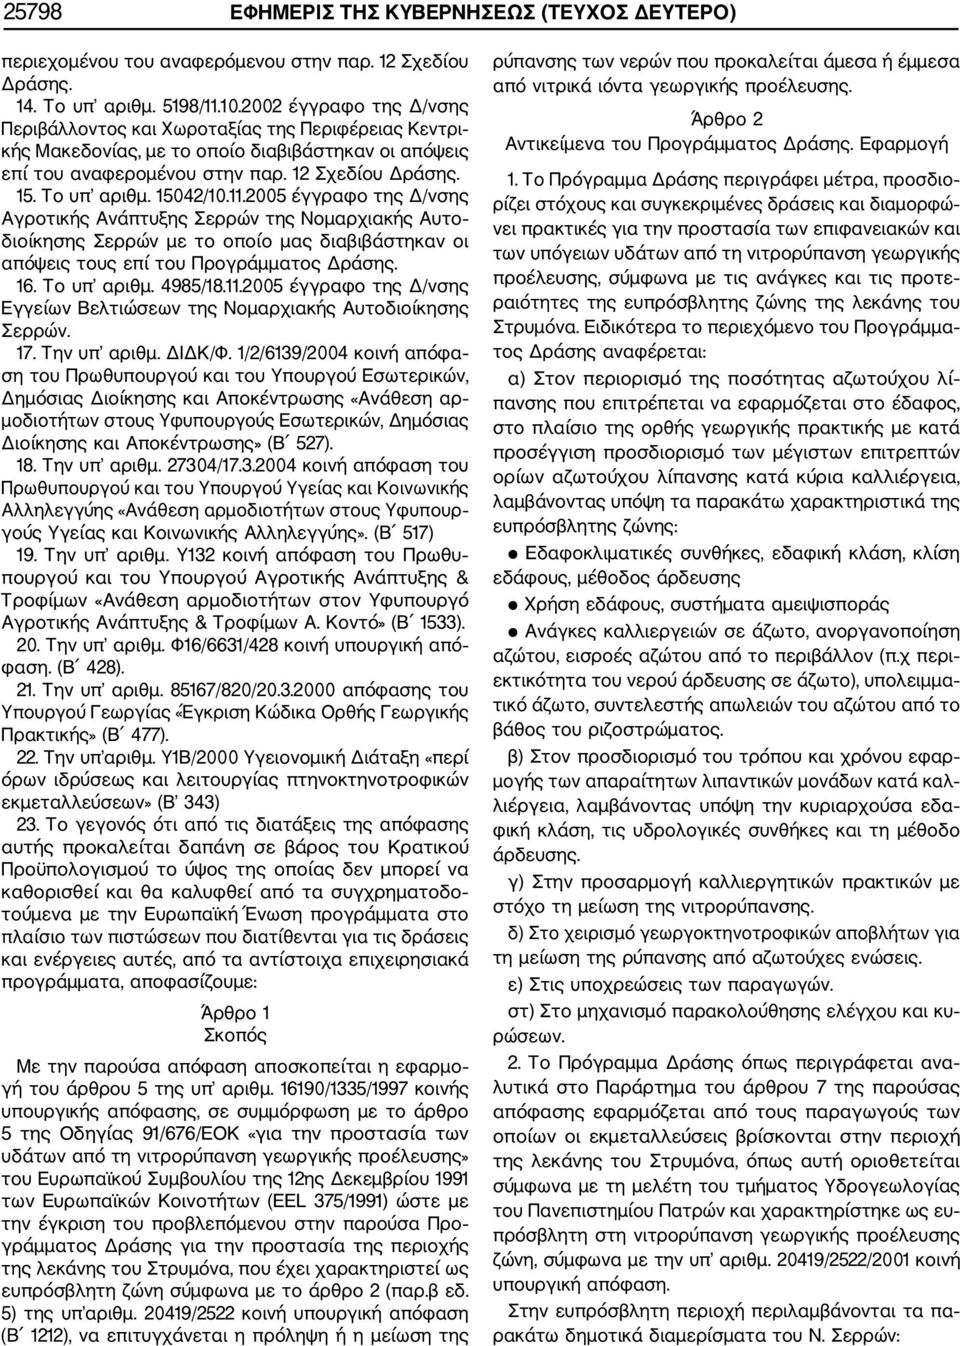 15042/10.11.2005 έγγραφο της Δ/νσης Αγροτικής Ανάπτυξης Σερρών της Νομαρχιακής Αυτο διοίκησης Σερρών με το οποίο μας διαβιβάστηκαν οι απόψεις τους επί του Προγράμματος Δράσης. 16. Το υπ αριθμ.